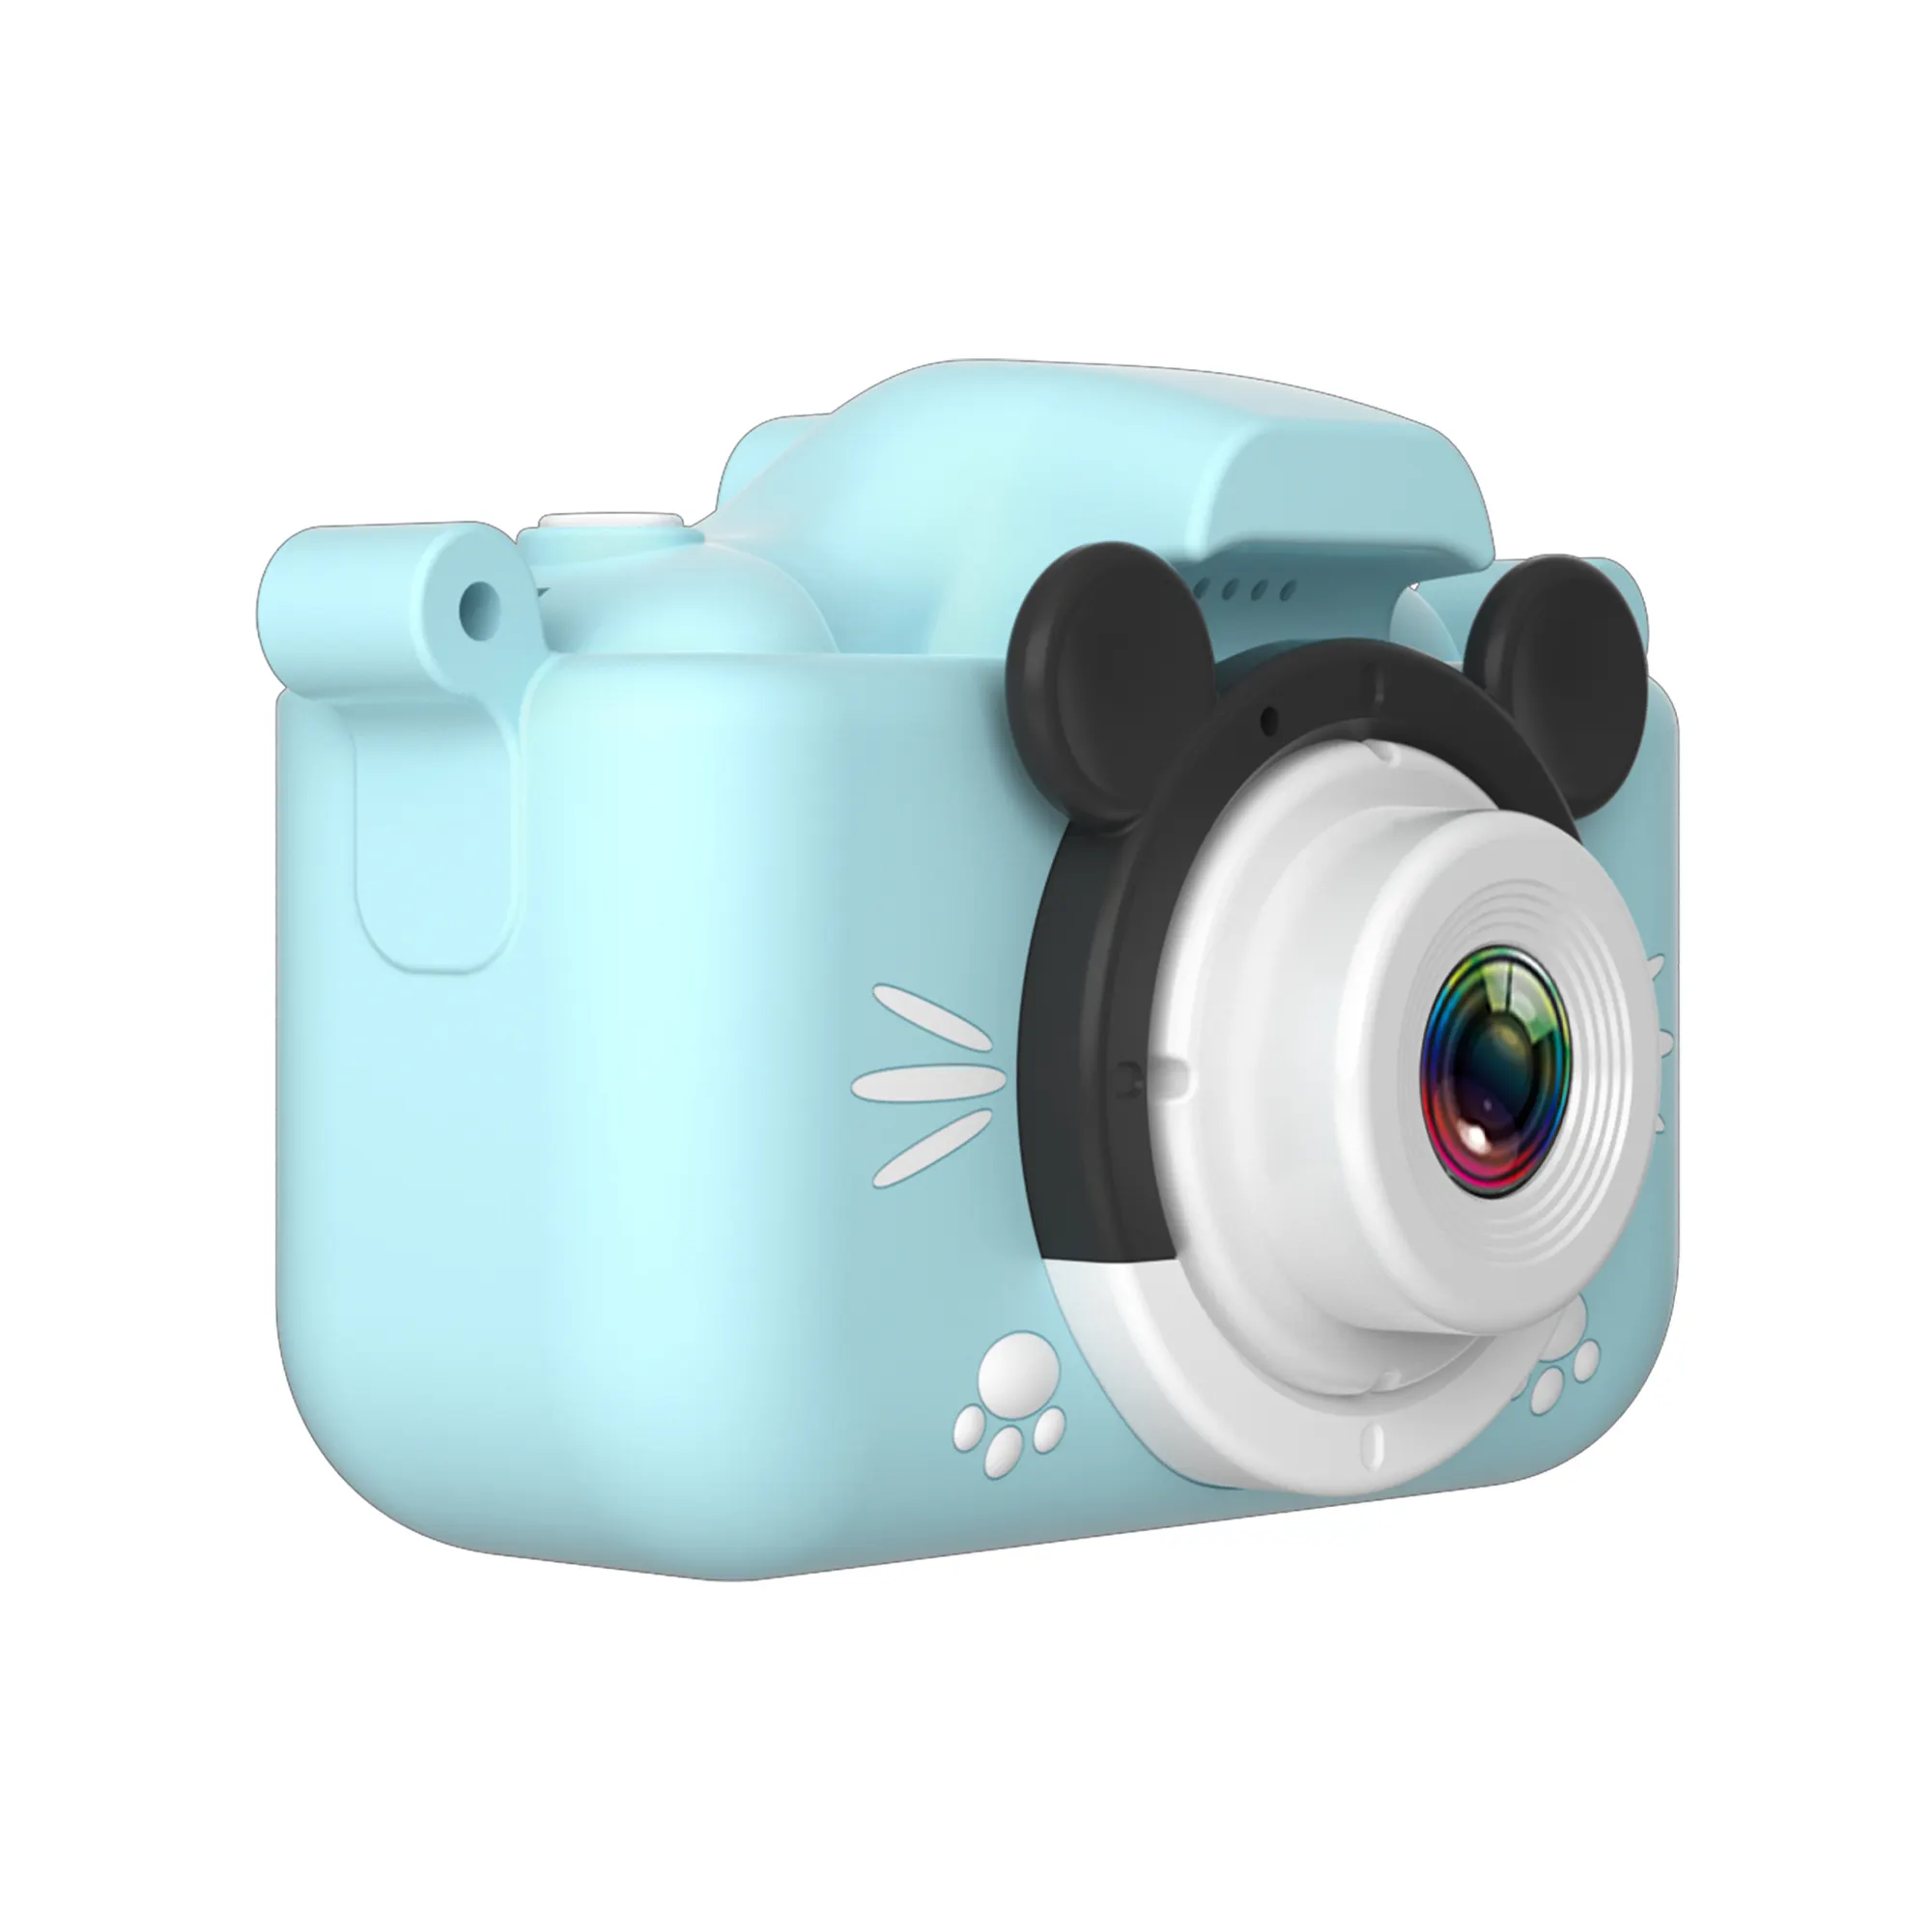 フロントとレラのダブルシューティングワンキー操作で写真を簡単に撮るデジタル2.0インチipsスクリーンキッズデジタルカメラ